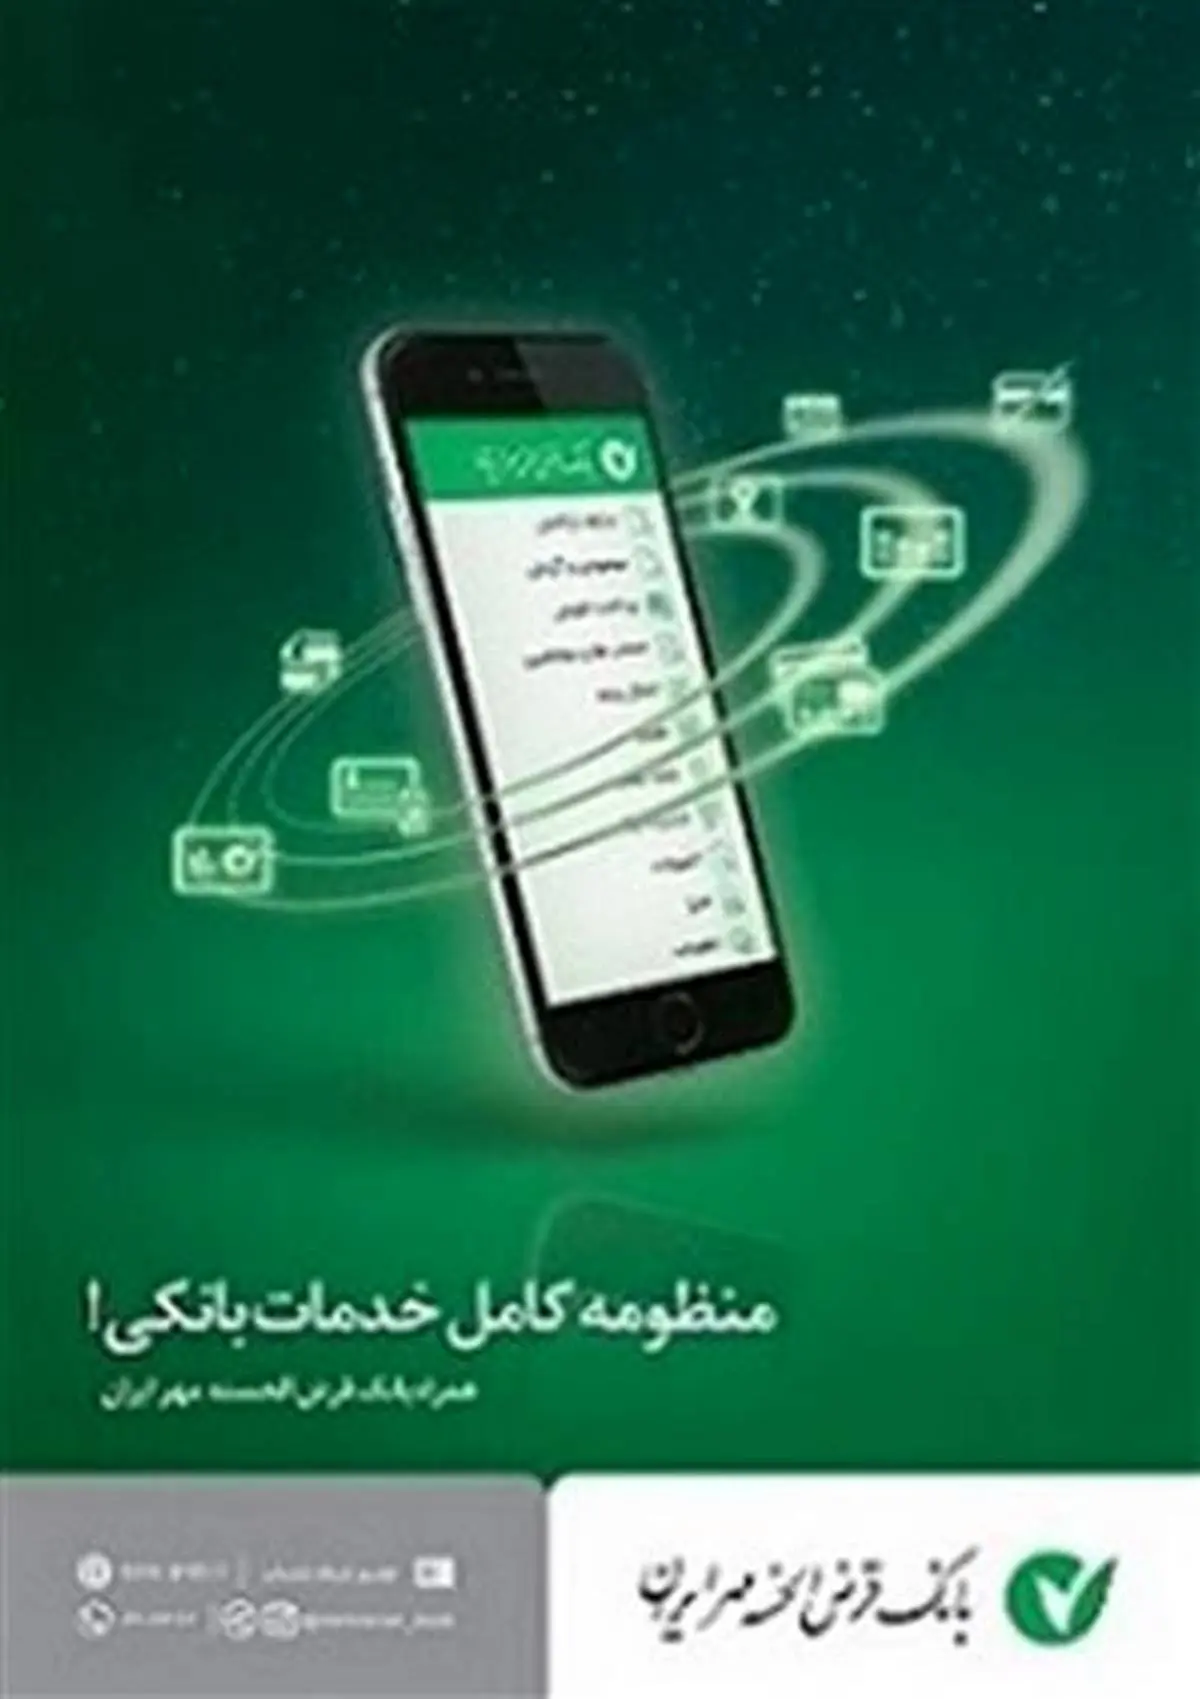 نسخه جدید همراه بانک، بانک قرض الحسنه مهر ایران به روز رسانی شد
